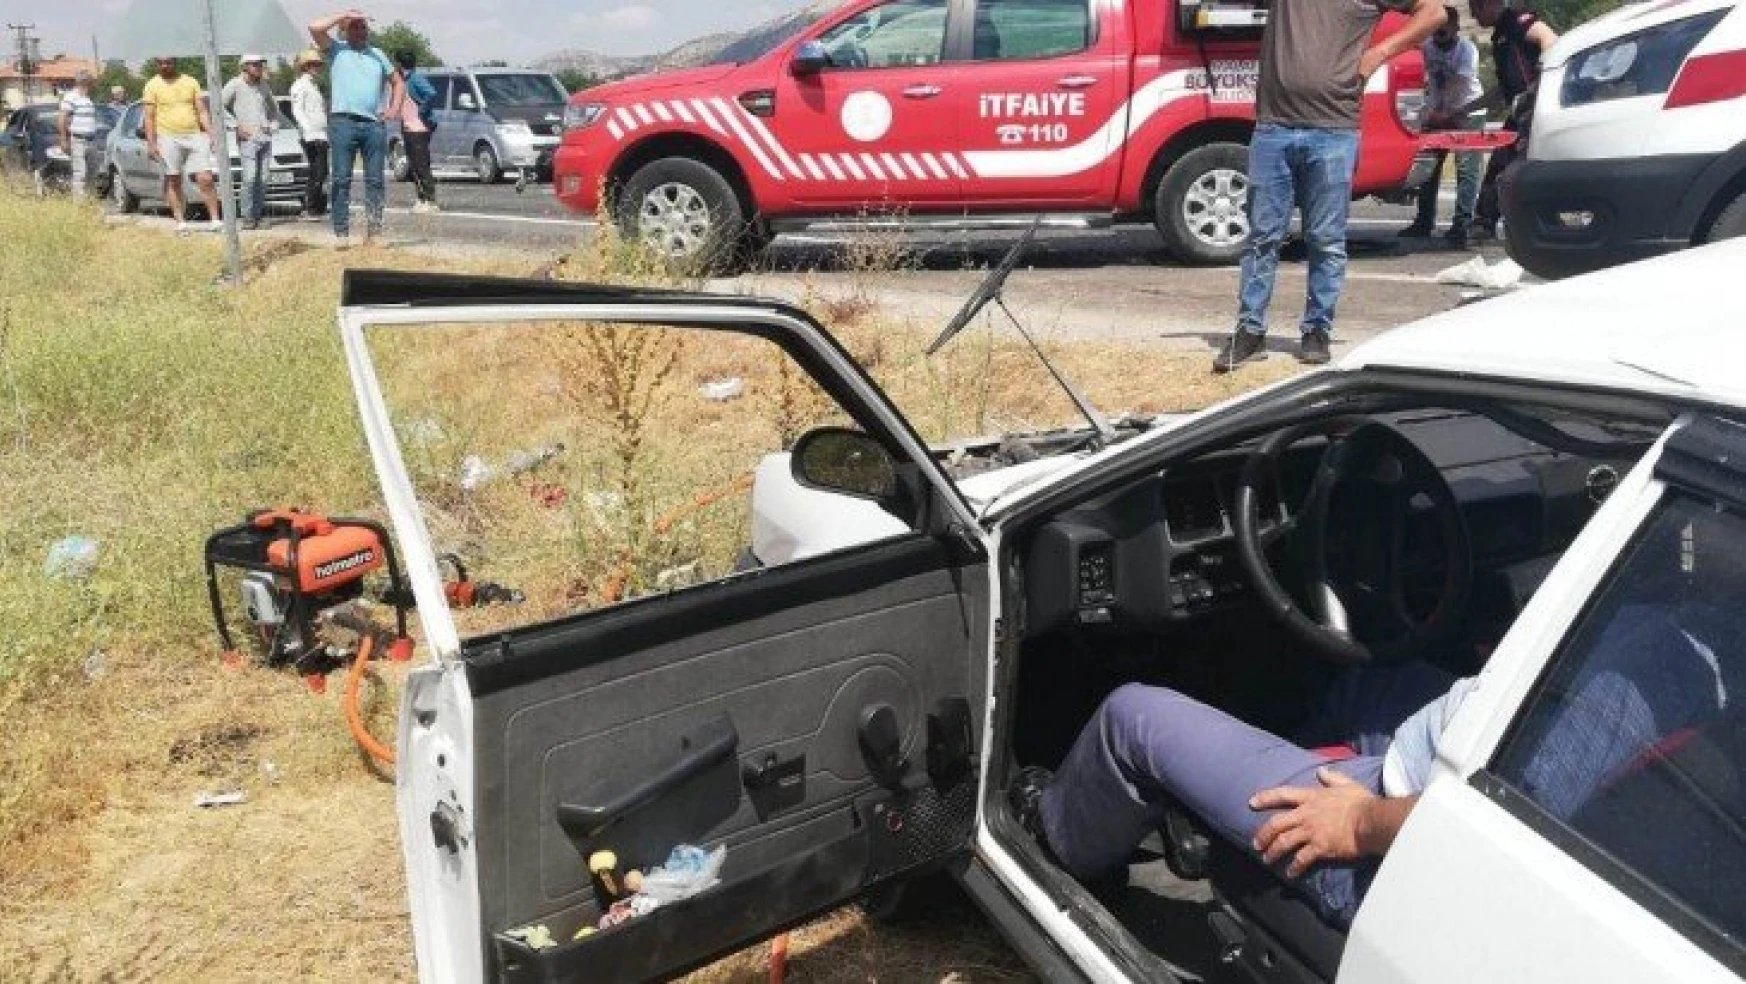 Malatya'da feci kaza: 2 ölü, 4 yaralı